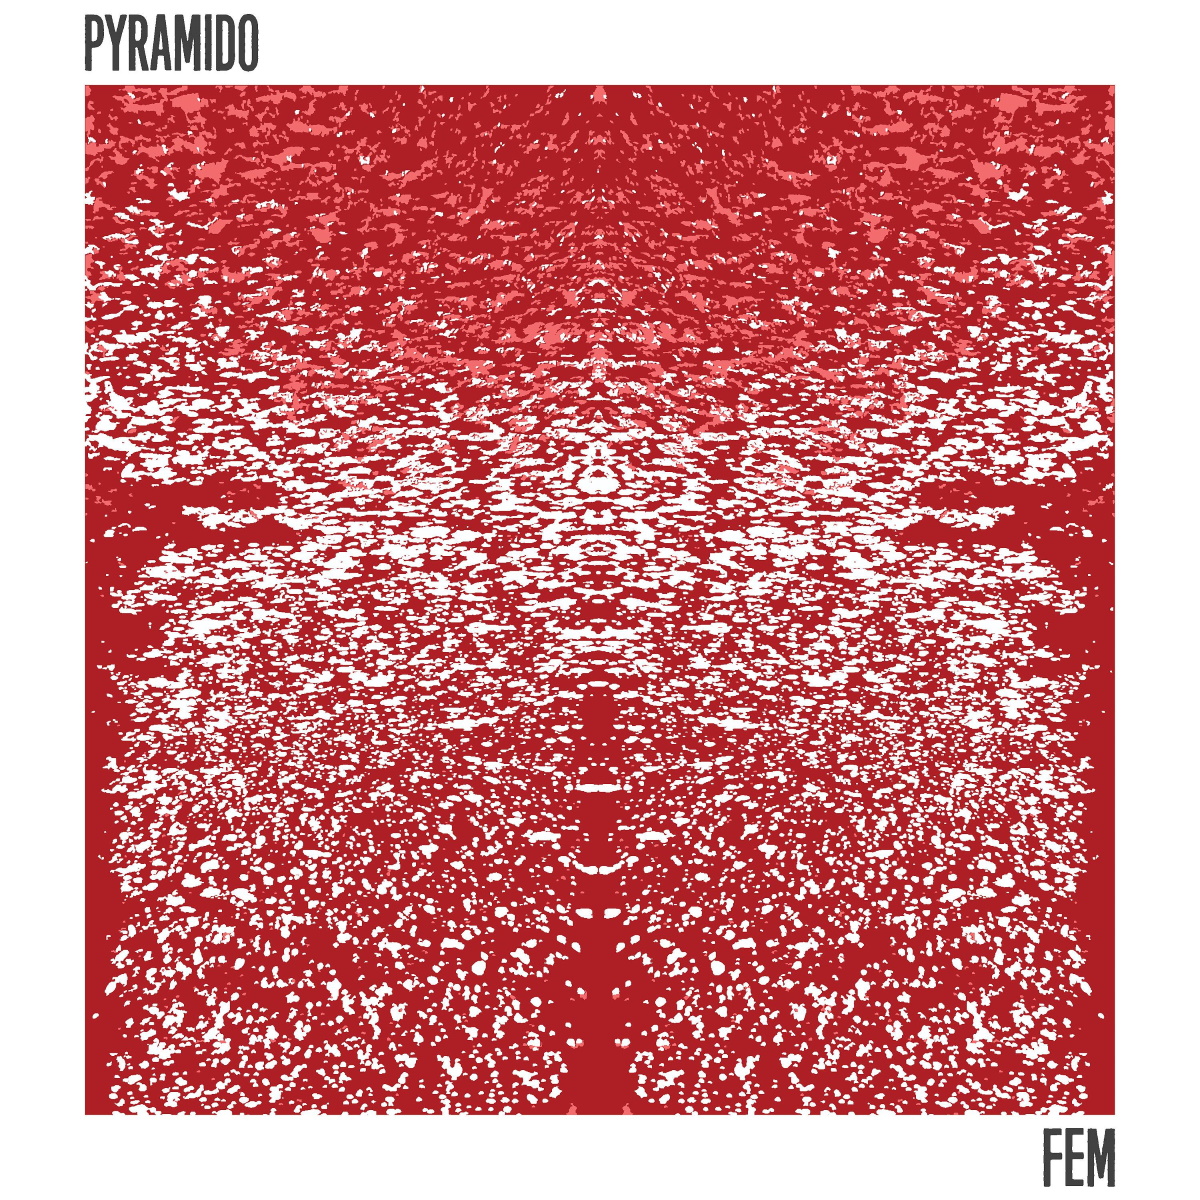 PYRAMIDO cover Fem